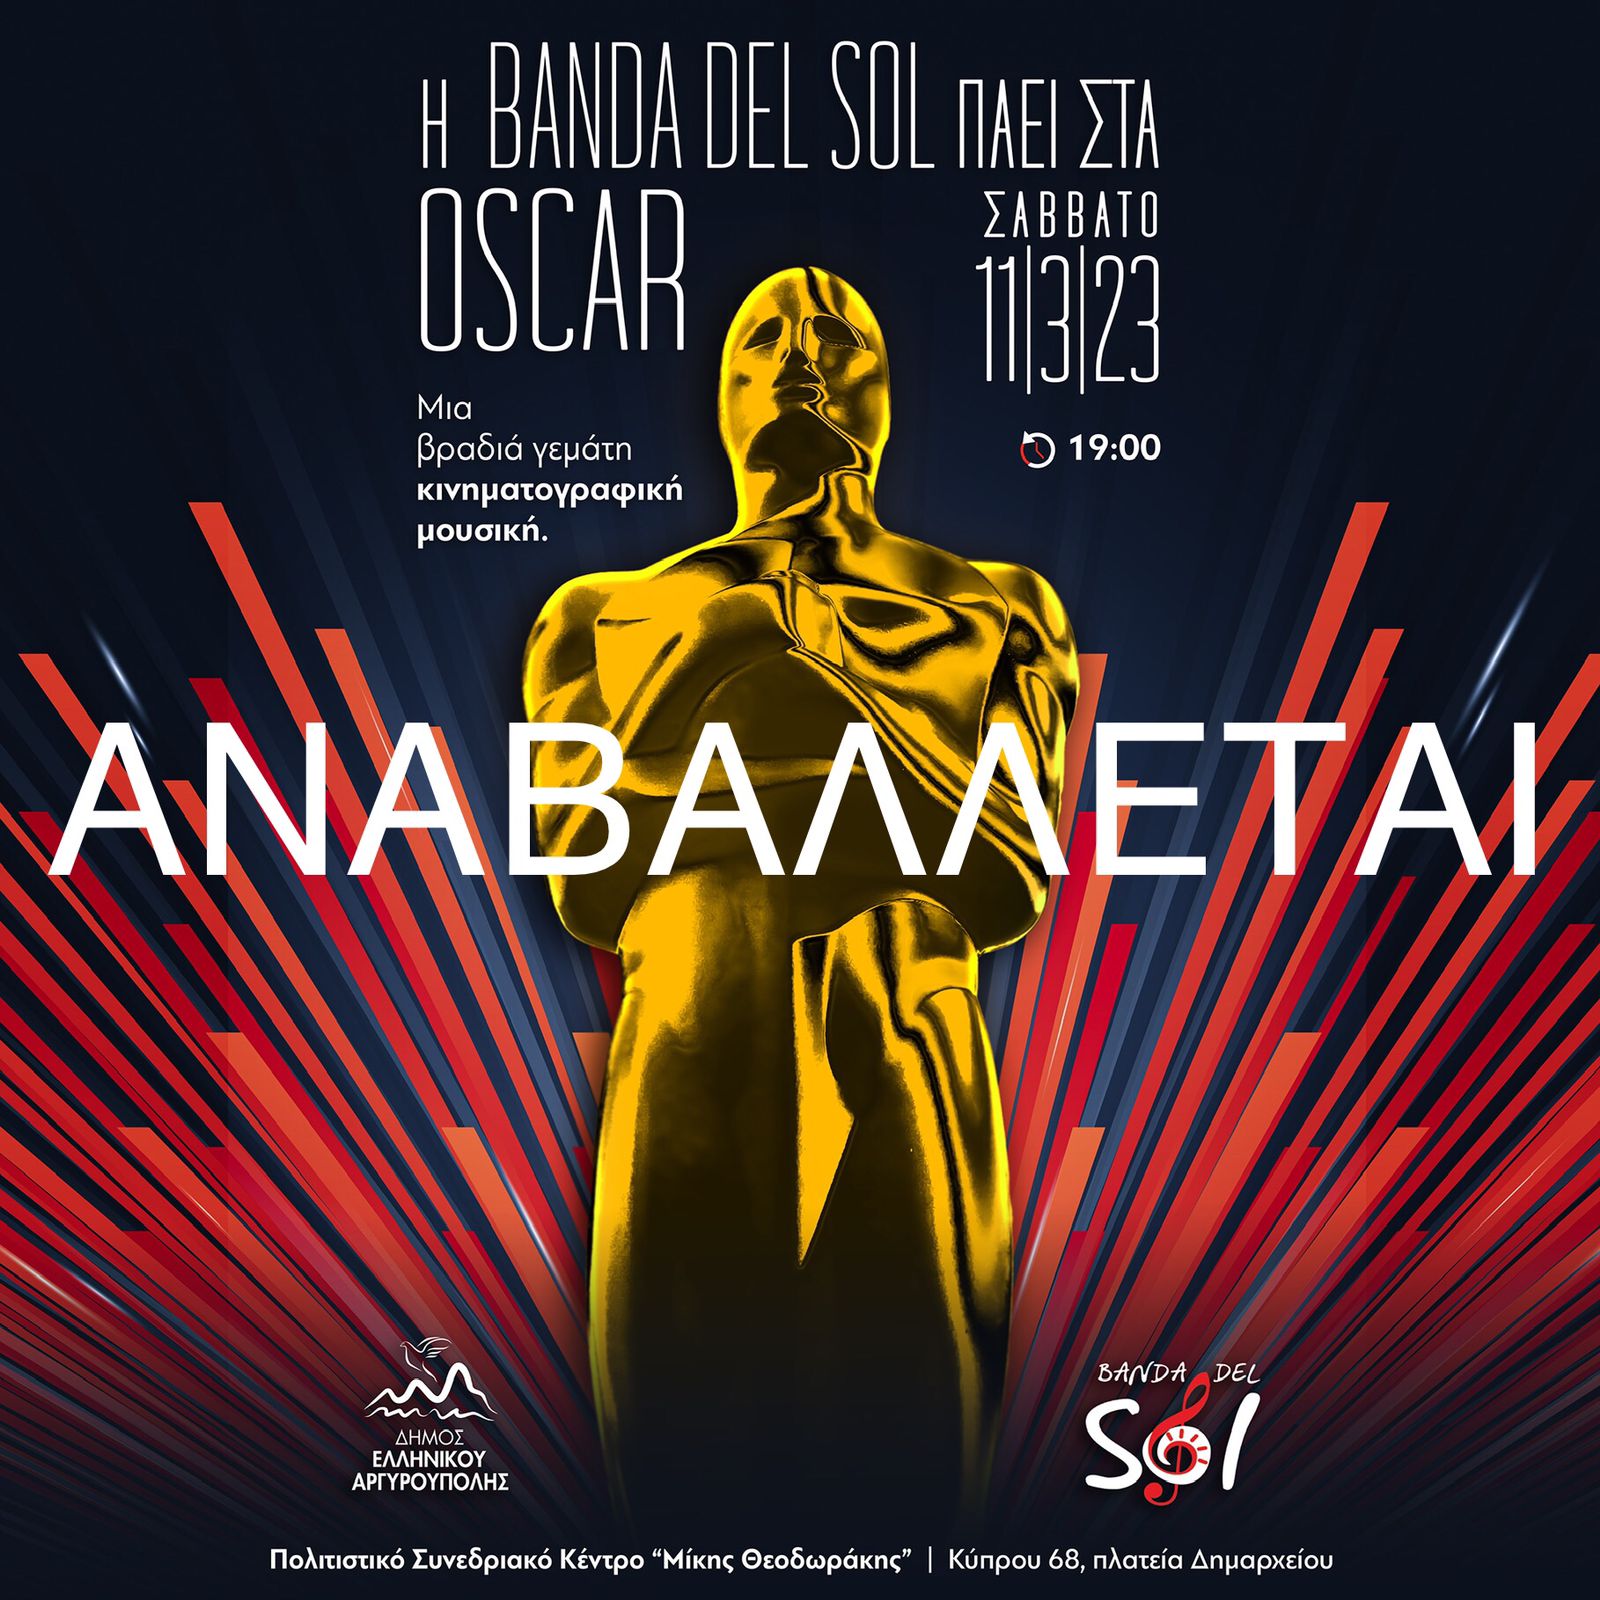 Αναβολή - Η BANDA DEL SOL πάει στα Oscar